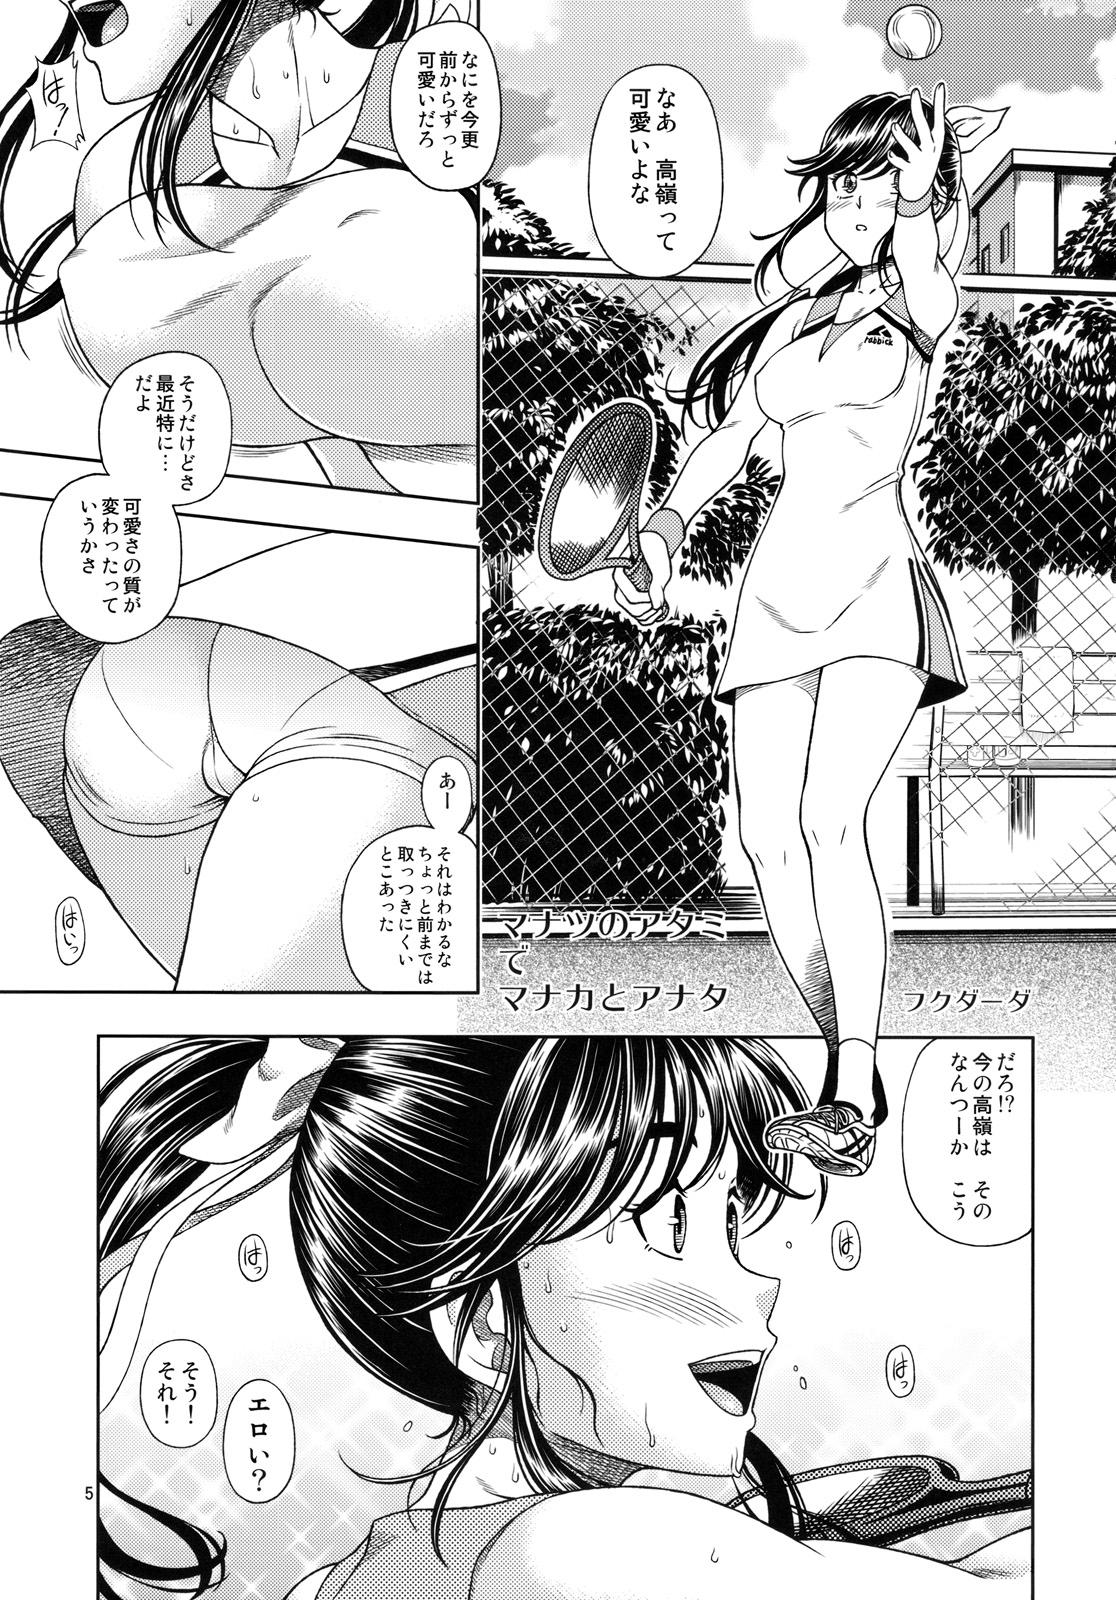 Dicks Manatsu Manaka+Rinko Omake - Love plus Piroca - Page 4